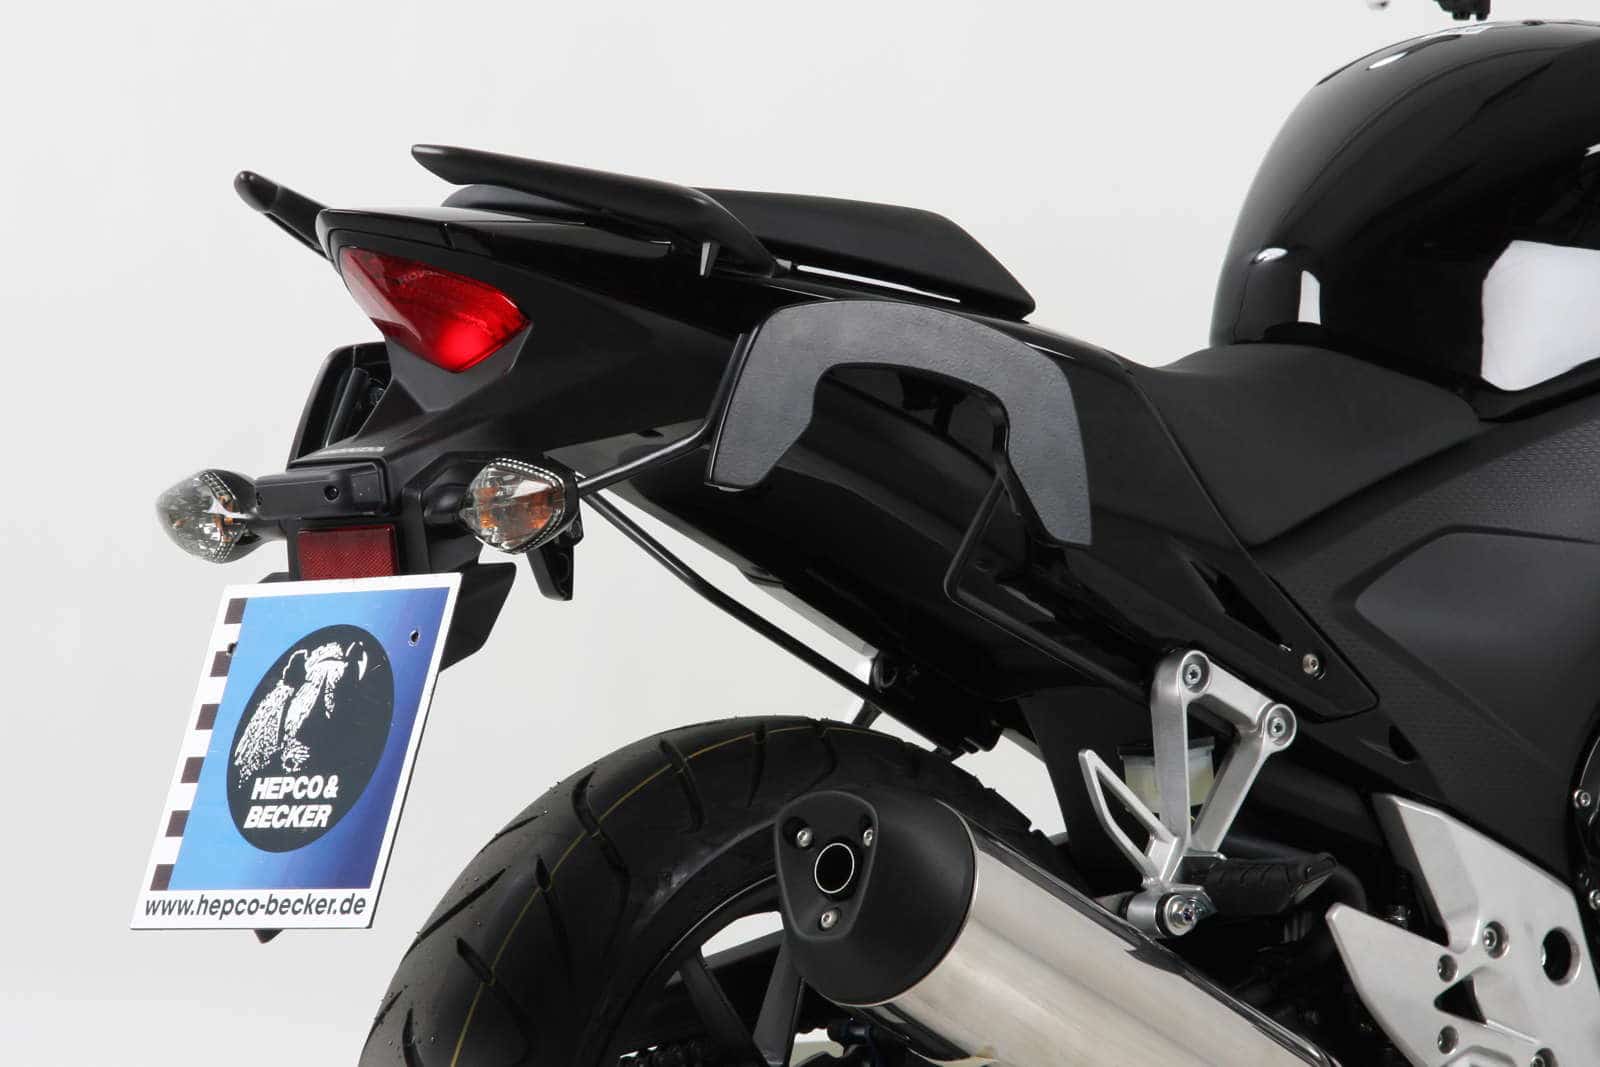 C-Bow sidecarrier for Honda CB 500 F (2013-2015)